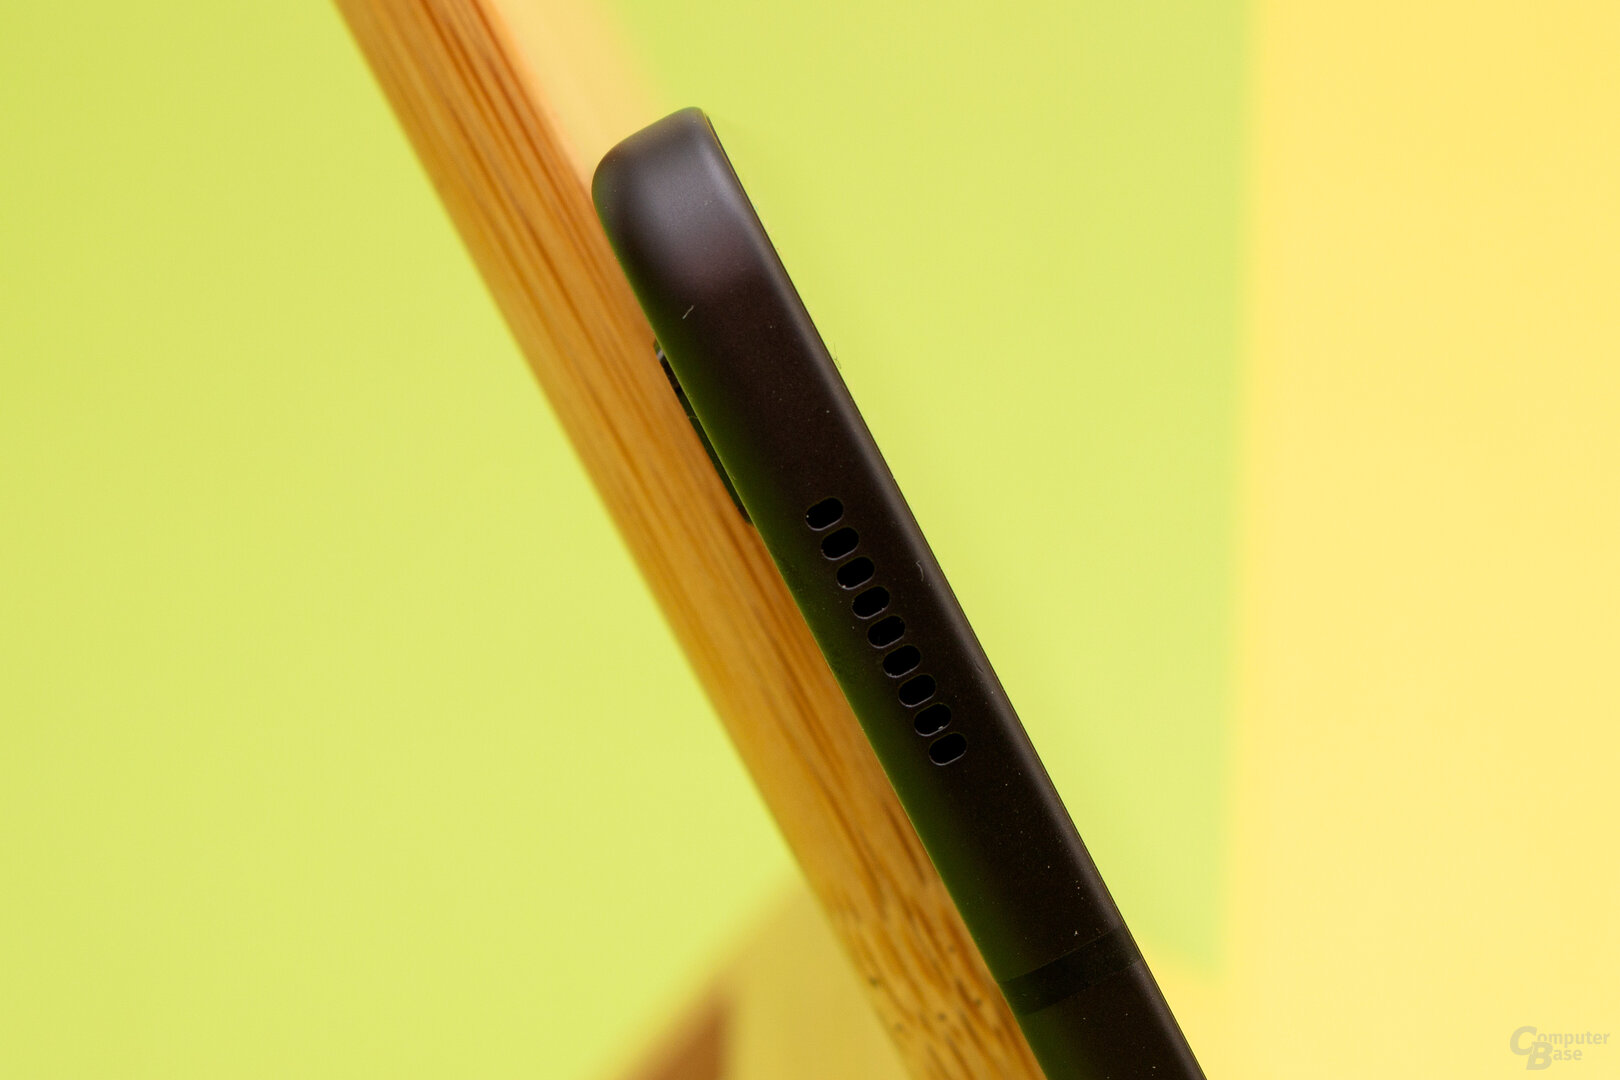 Das Galaxy Tab S6 Lite besitzt nur zwei statt der vier Lautsprecher beim S6